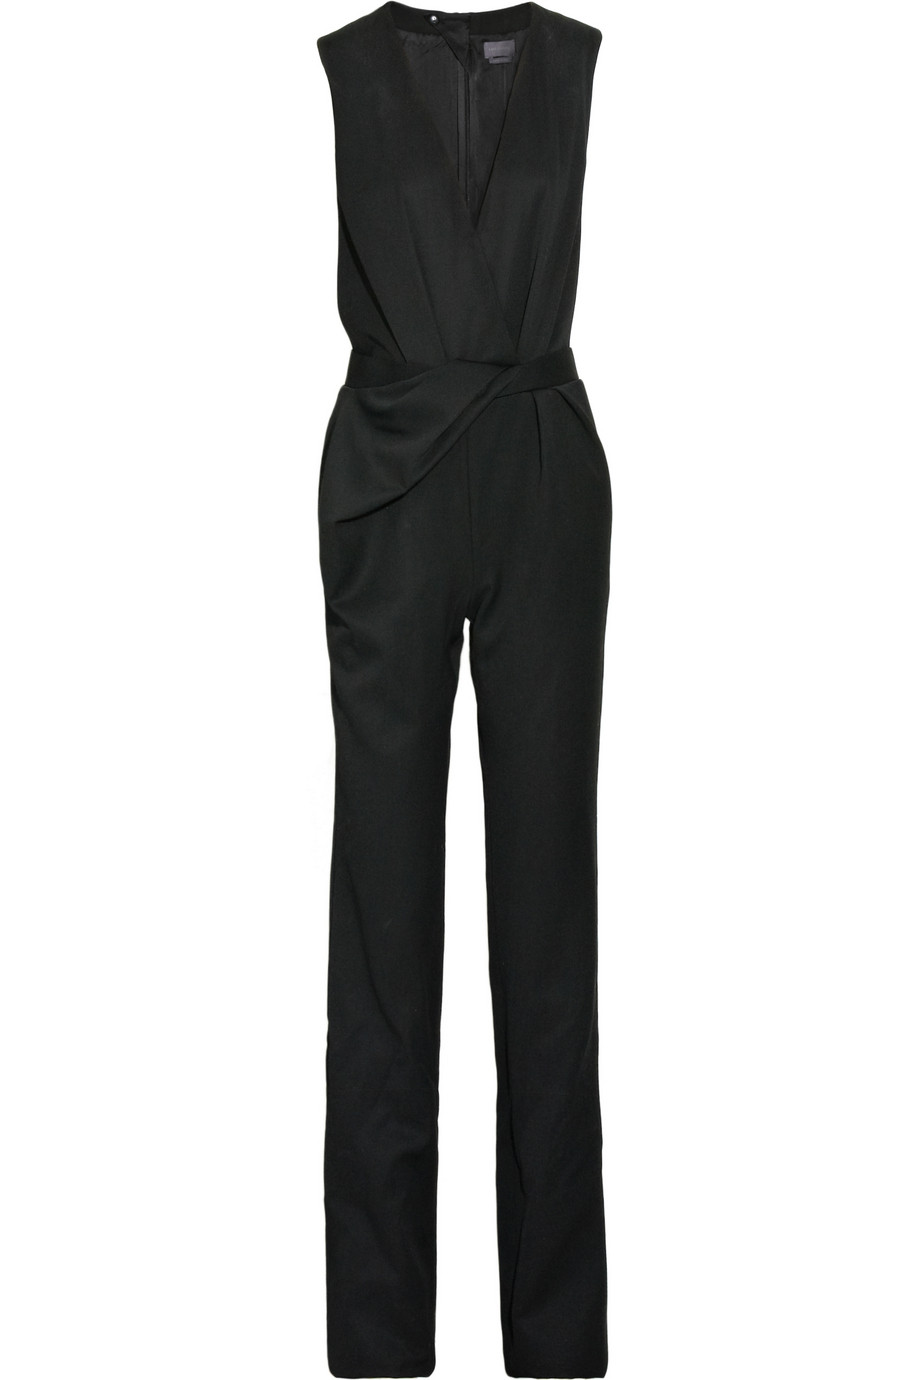 Halston Wrap-effect Crepe Jumpsuit in Black | Lyst